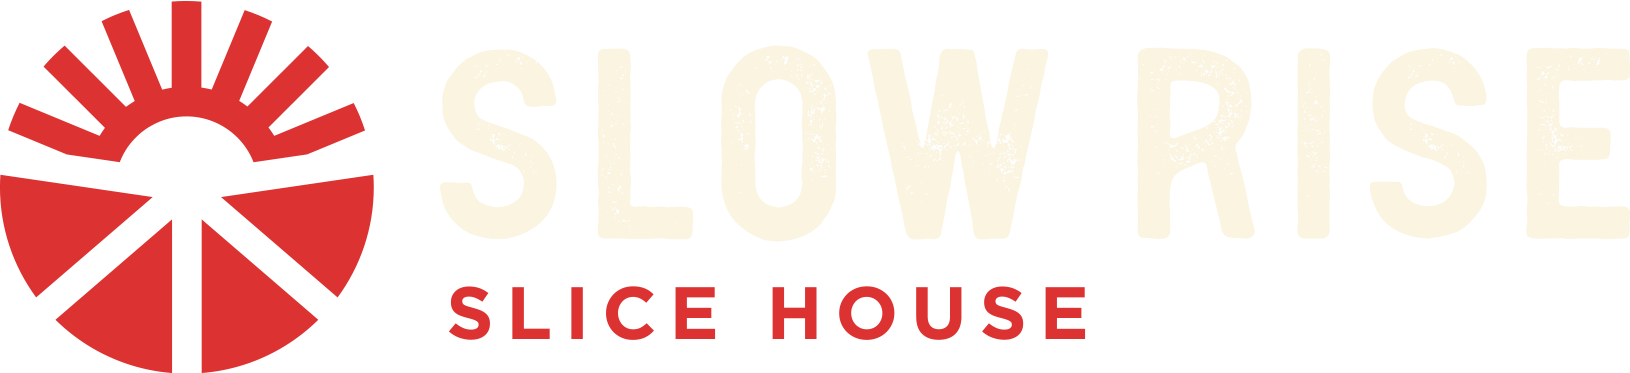 Slow Rise Slice House